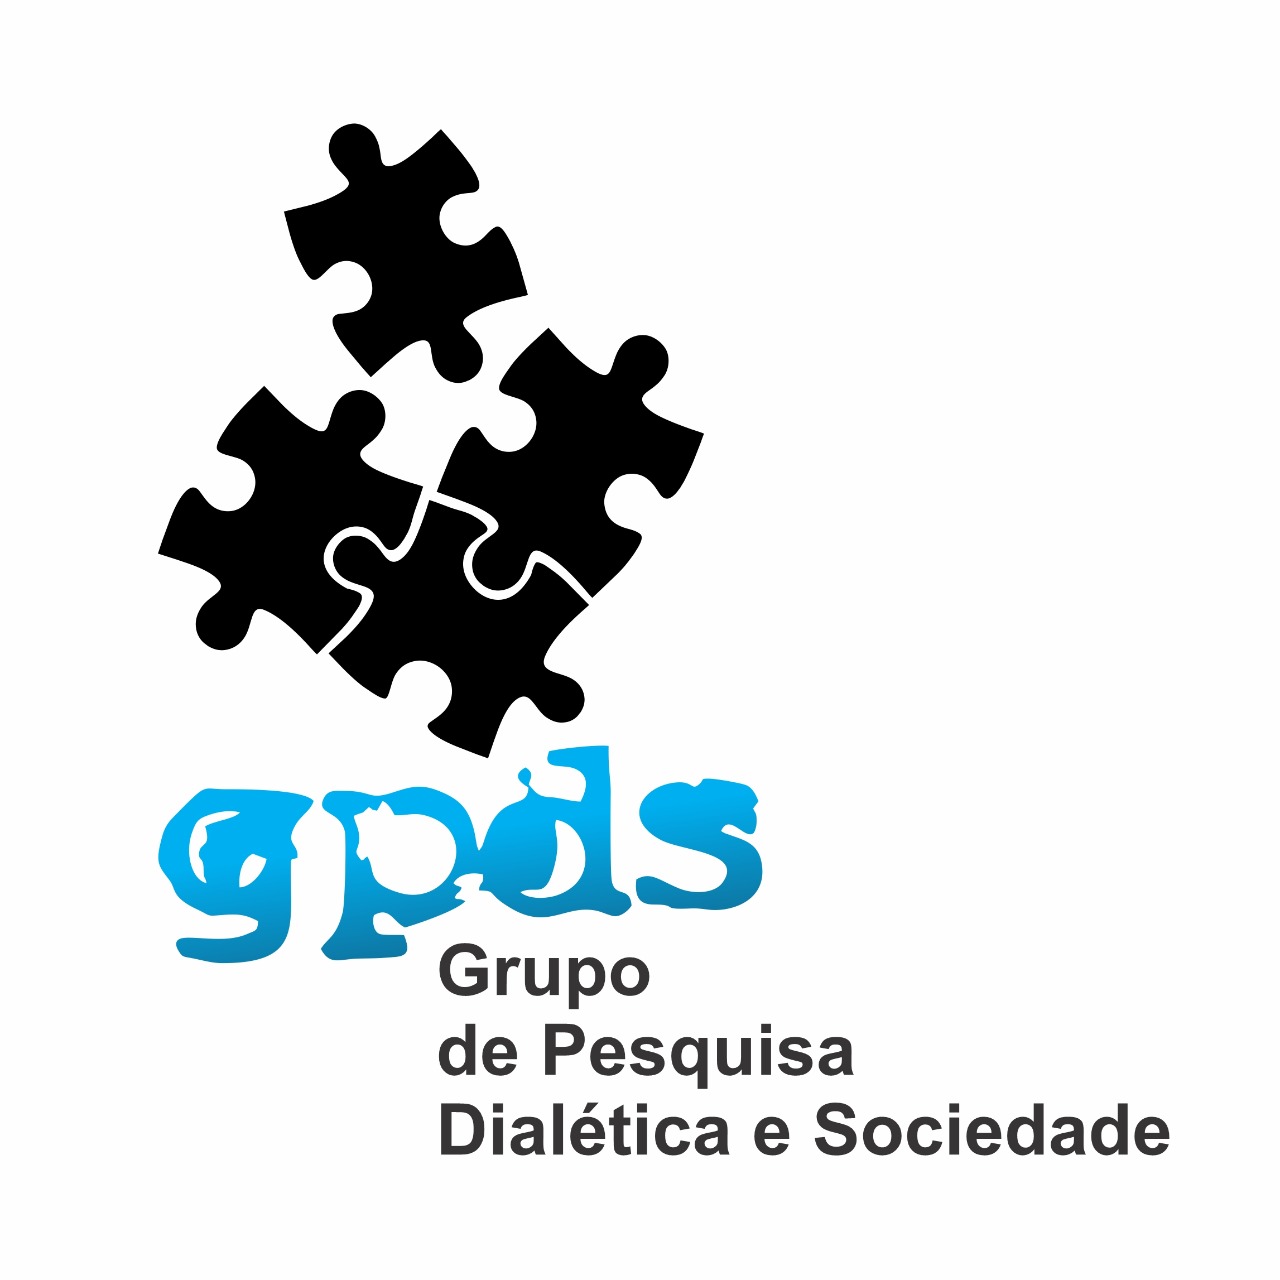 GPDS